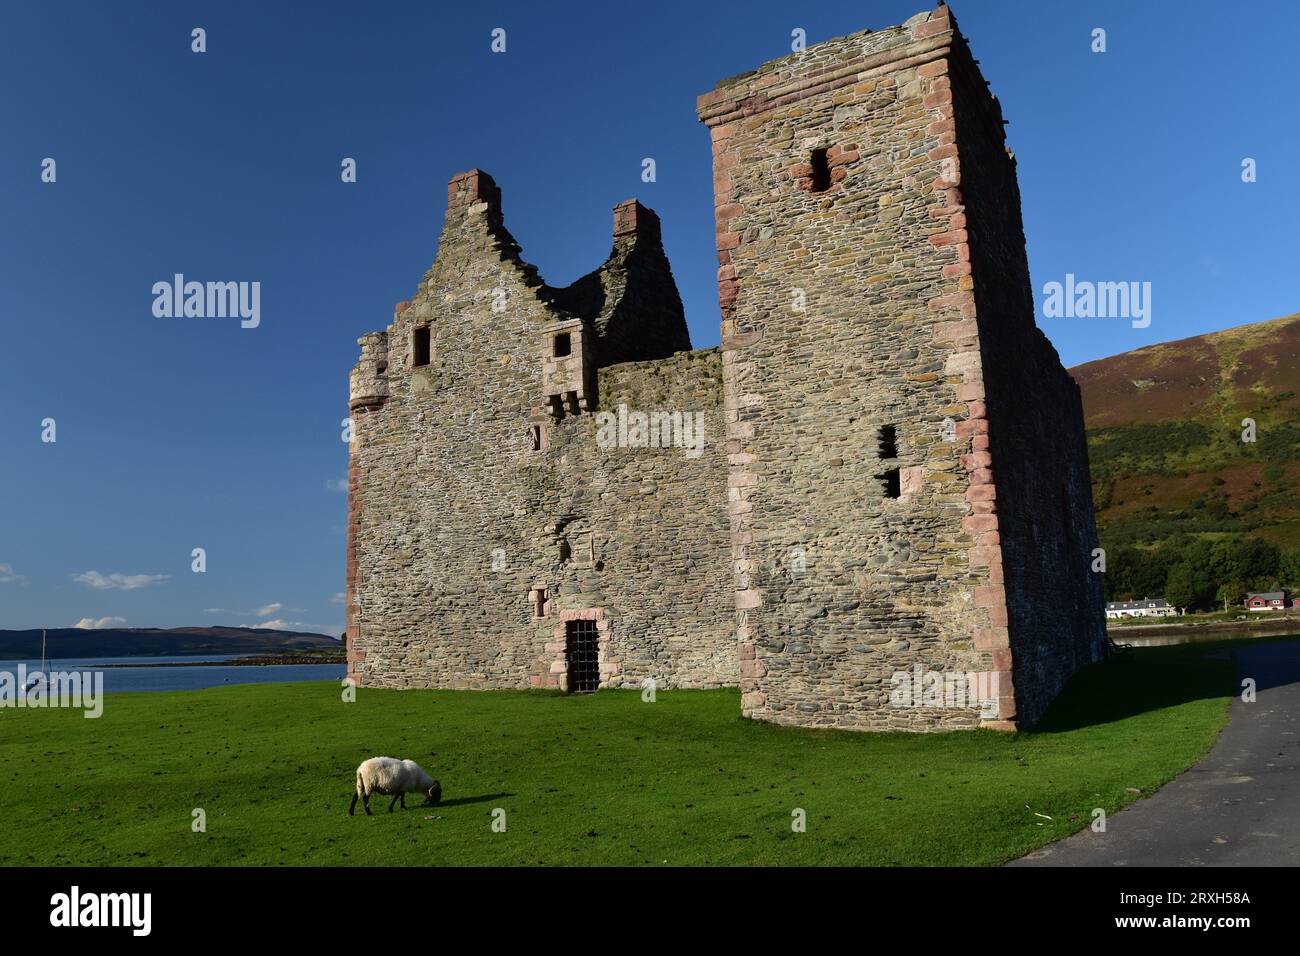 Un mouton broute devant le château de Lochranza sur l'île d'Arran, en Écosse. Banque D'Images